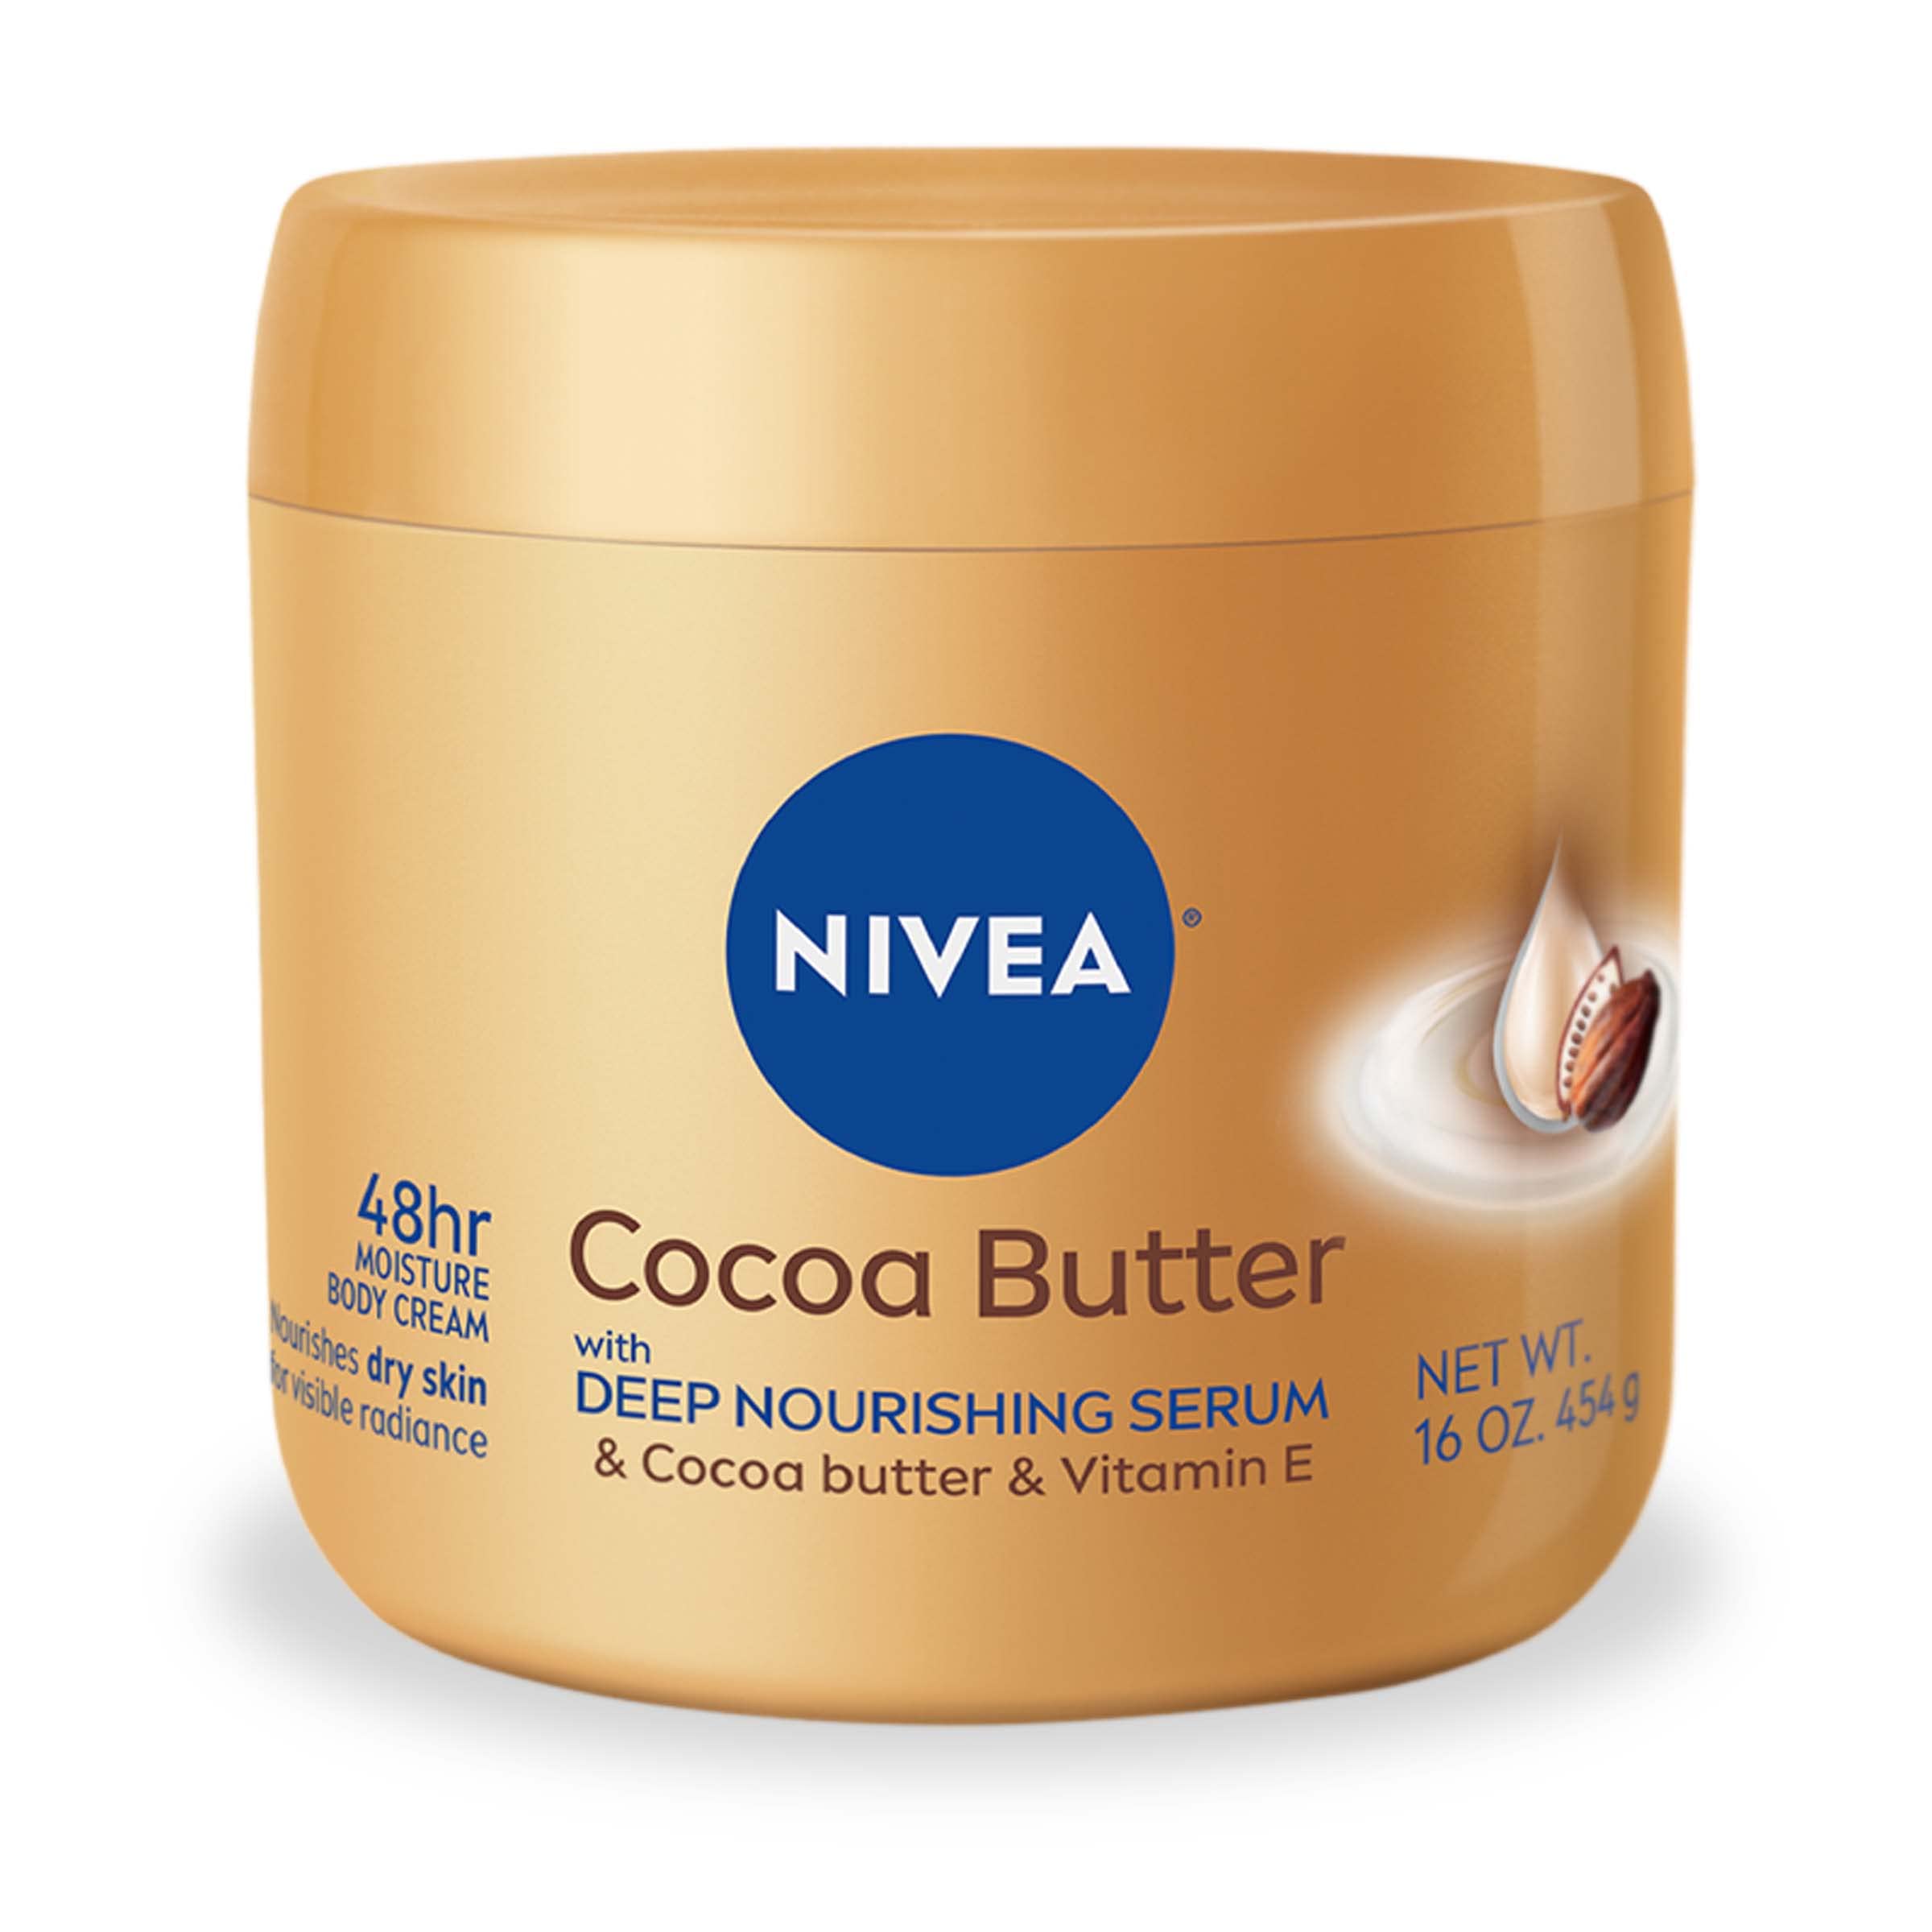 16-Oz Nivea Cocoa Butter Body Cream w/ Deep Nourishing Serum & Cocoa Butter & Vitamin E $4.80 w/ S&S + Free Shipping w/ Prime or on $25+